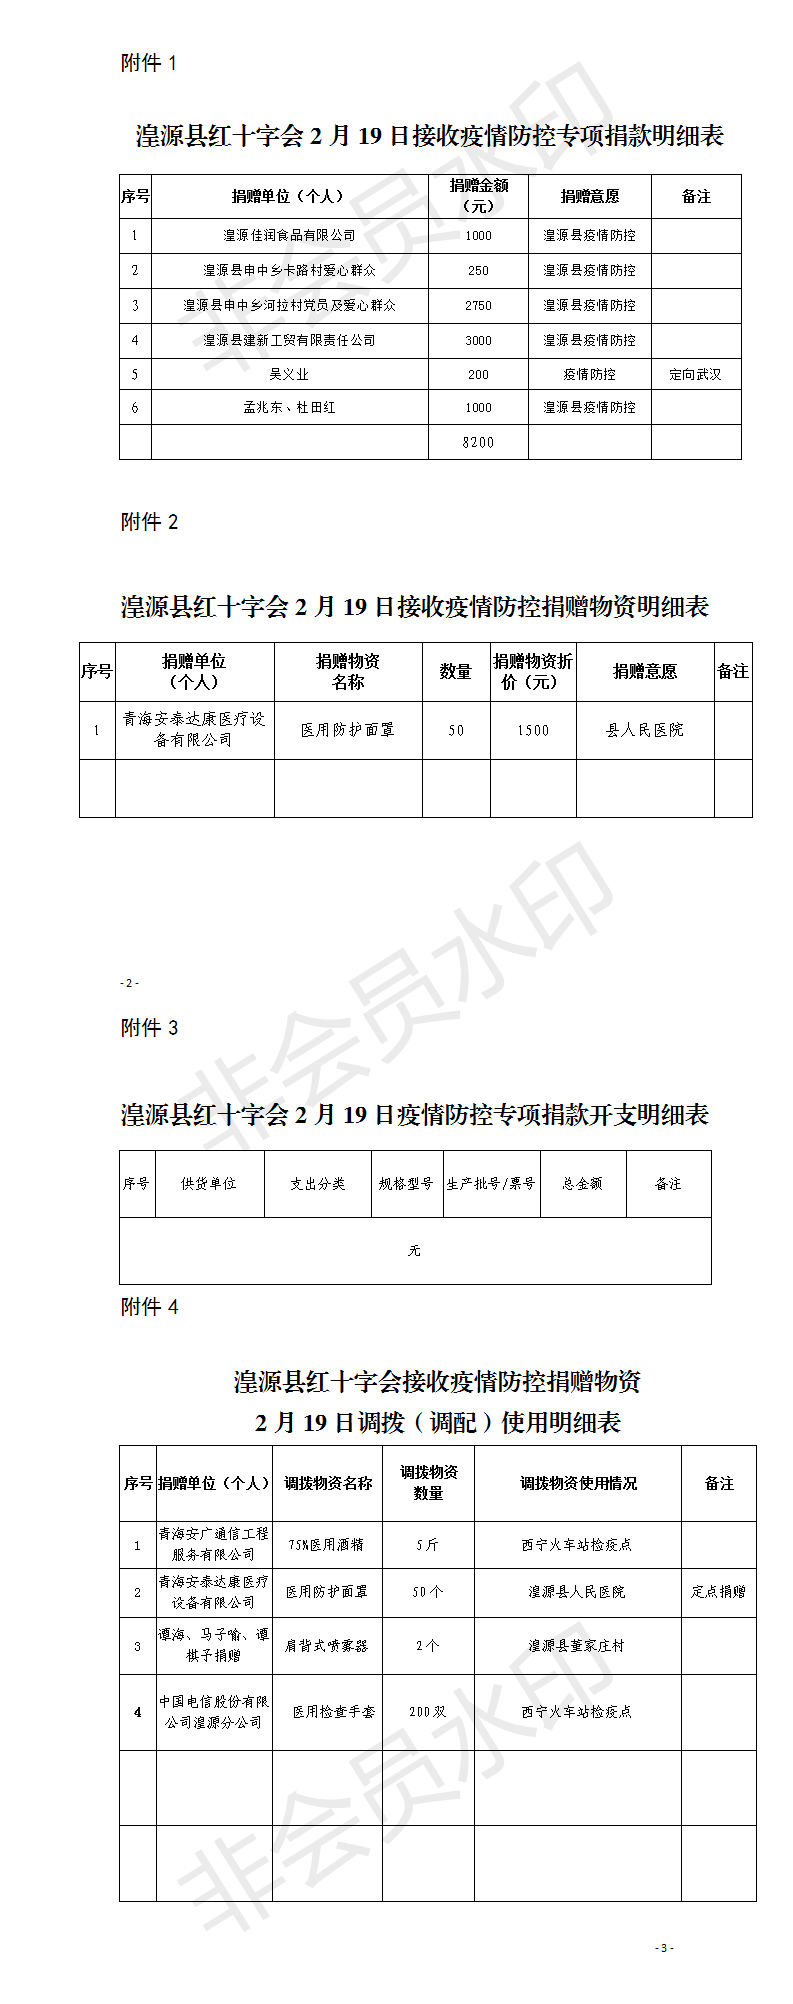 湟源县红十字会2月19日接收疫情防控专项捐款明细表.png